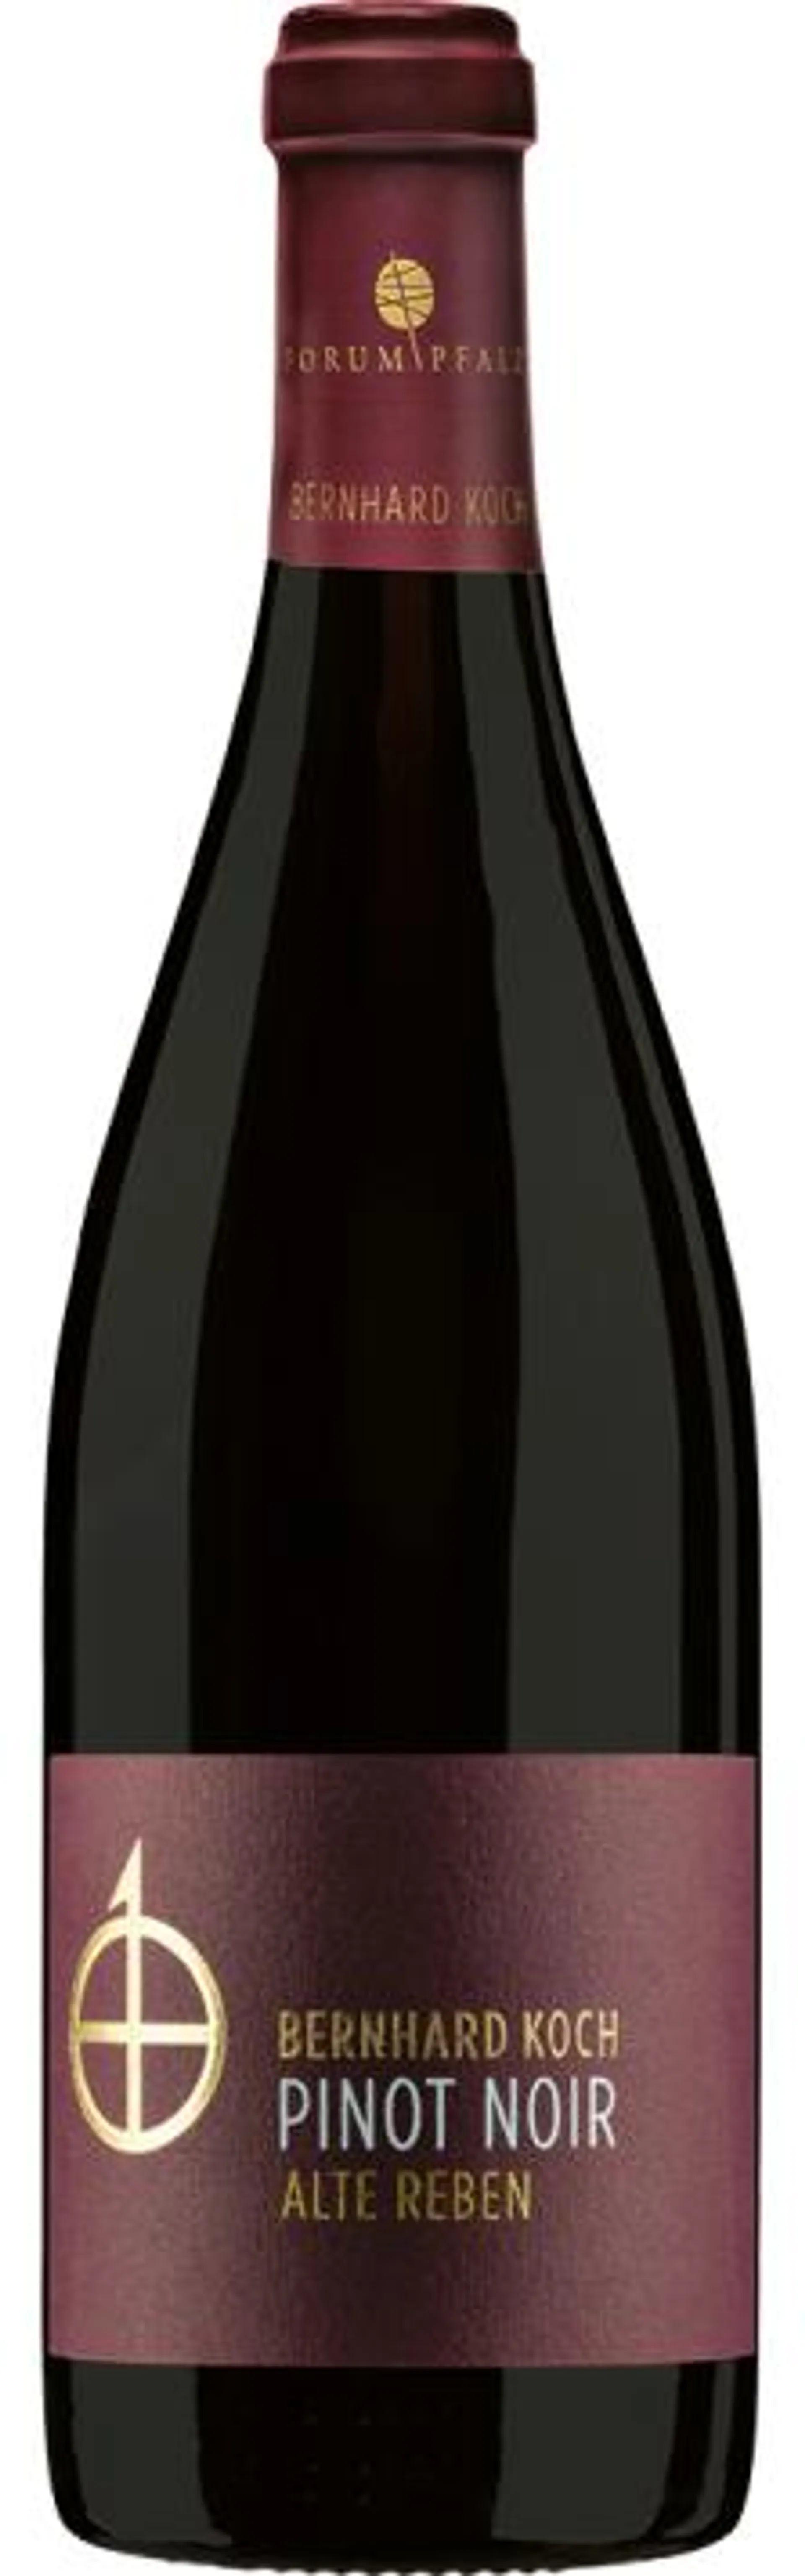 2019 Pinot Noir Réserve Alte Reben